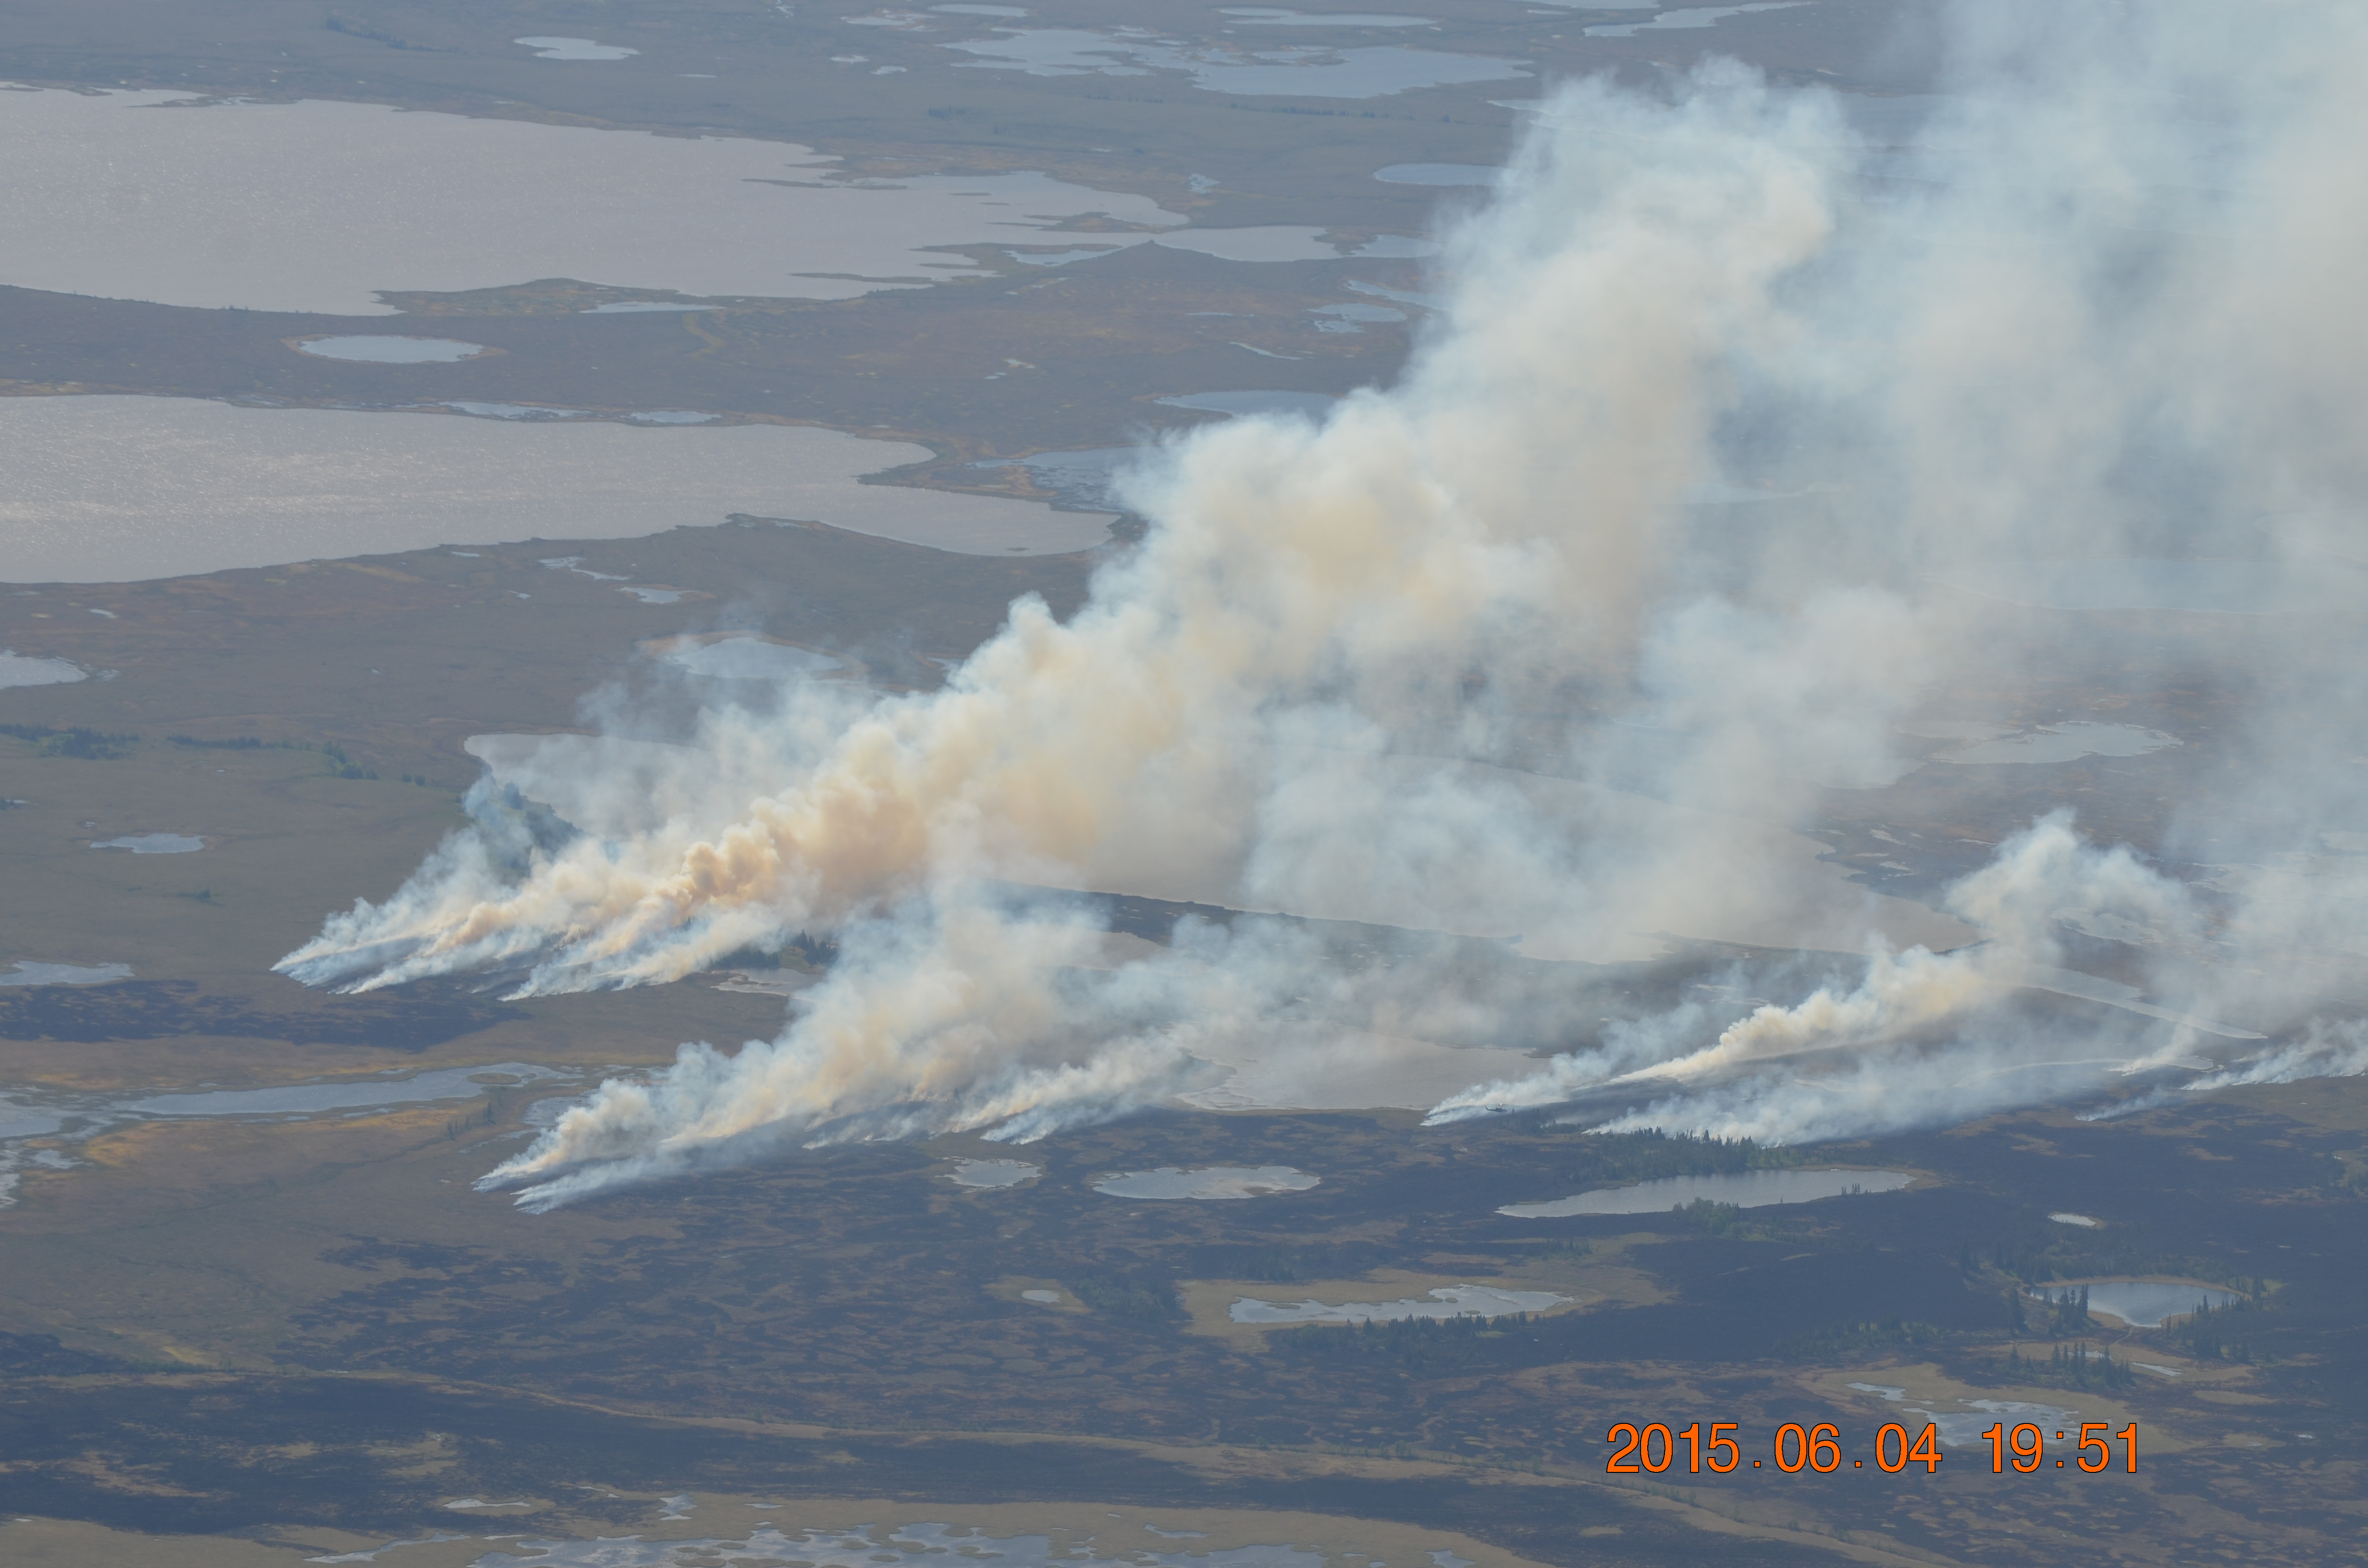 Multiple wildfires burning near Aniak, Alaska, in June 2015.